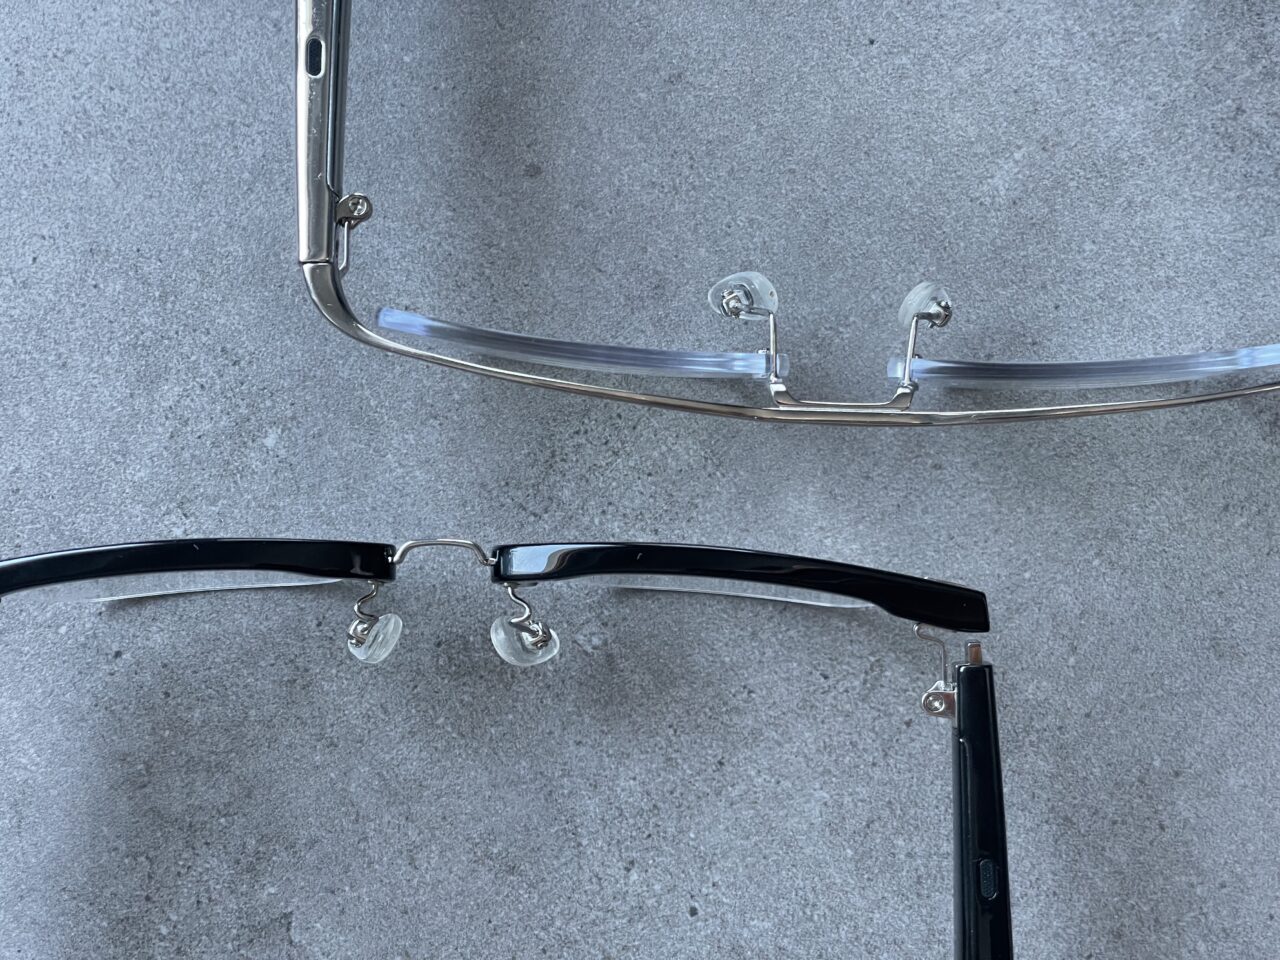 Dwa pary okularów bez soczewek, leżące na szarym betonowym podłożu – jedna para z przezroczystymi, a druga z czarnymi oprawkami.